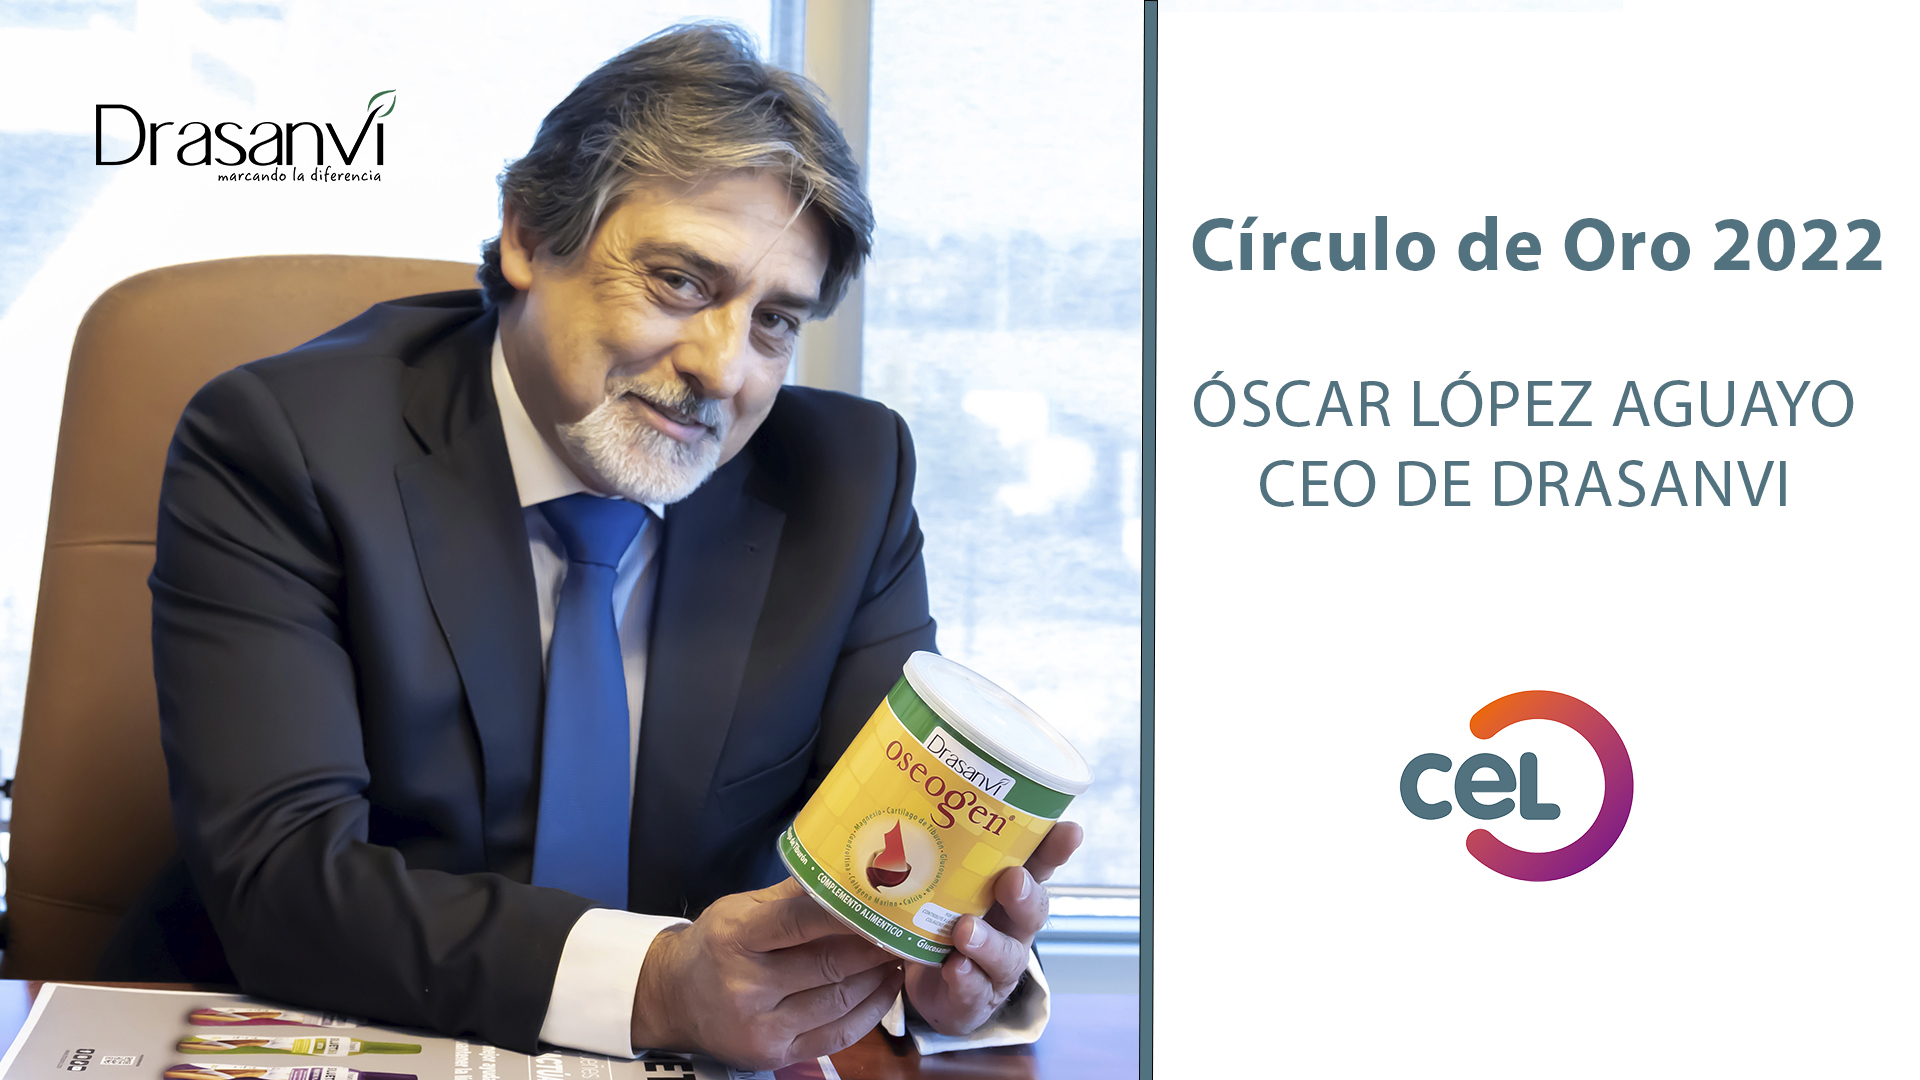 Óscar López Aguayo, CEO de Drasanvi, premiado con el Círculo de Oro 2022 del CEL